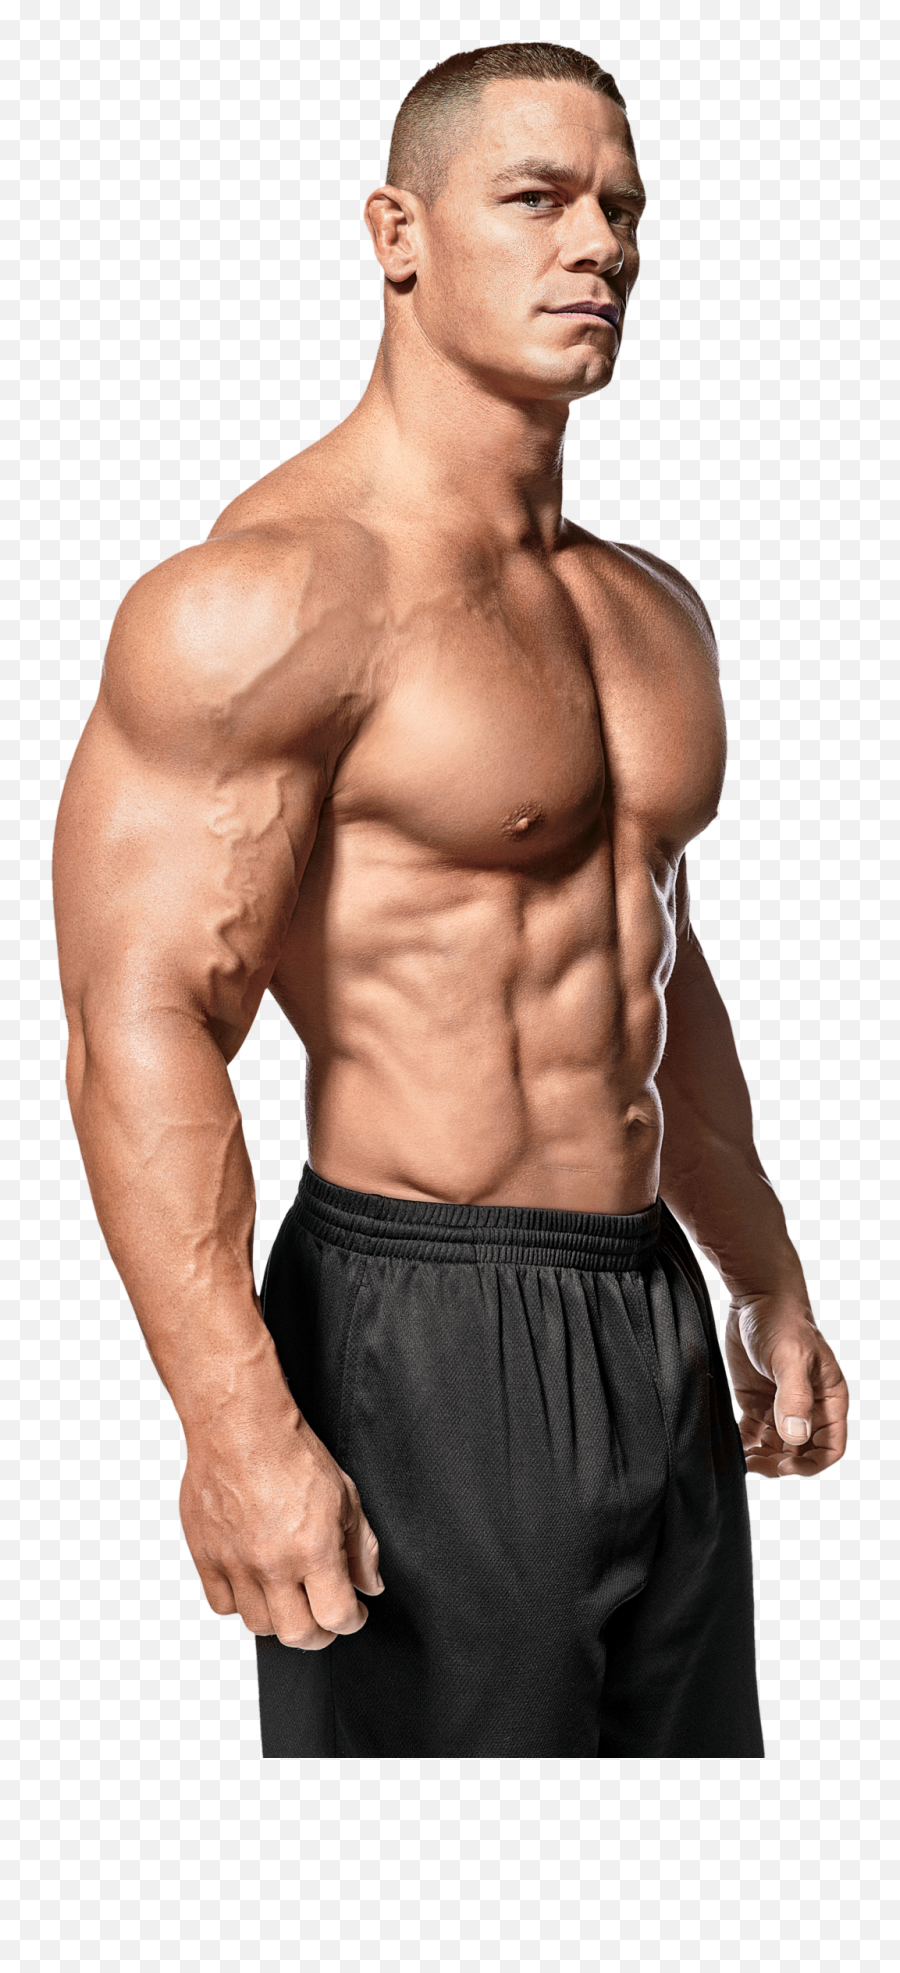 Bodybuilder Png Images Bodybuilding - John Cena Bodybuilding Emoji,Bodybuilder Emotions